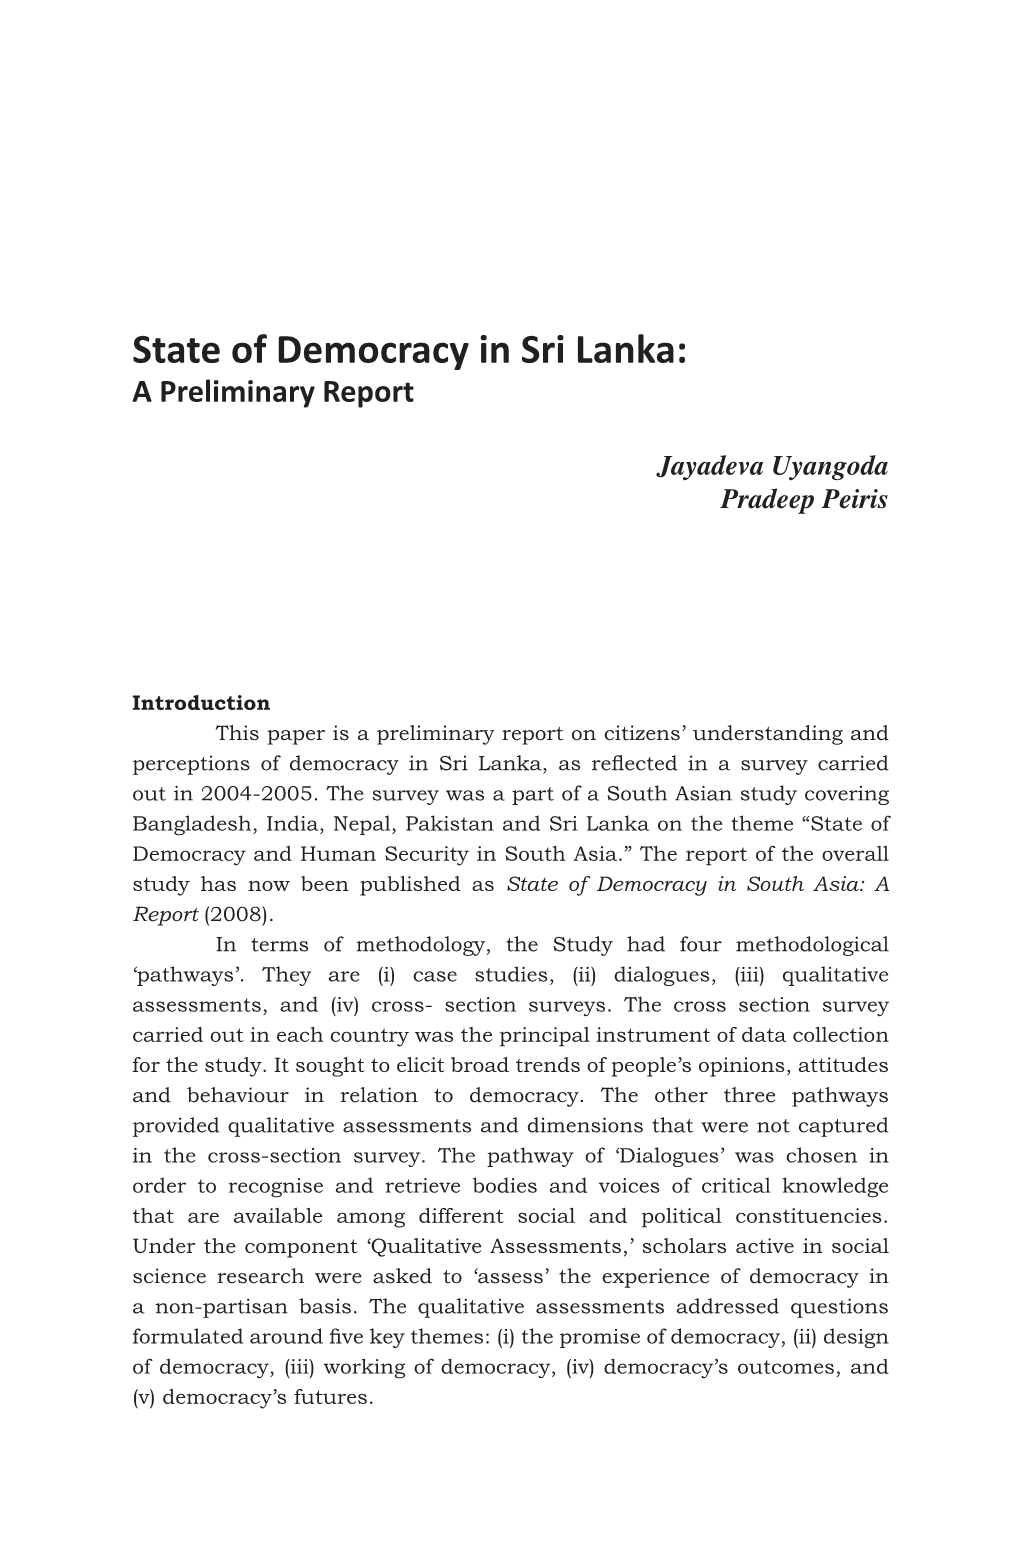 State of Democracy in Sri Lanka: a Preliminary Report